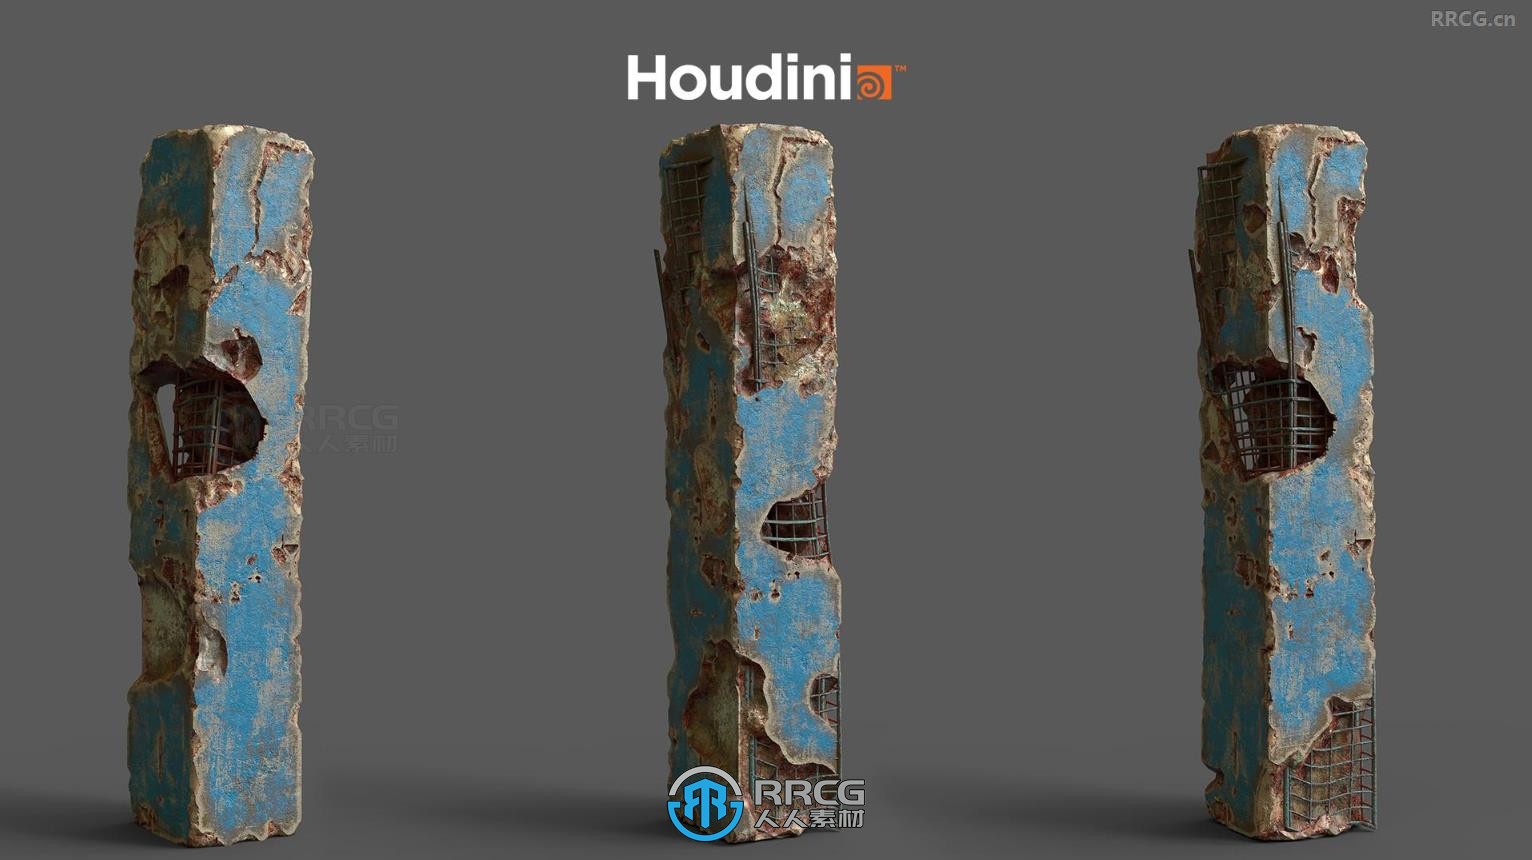 Houdini残垣断壁建筑程序化制作视频教程